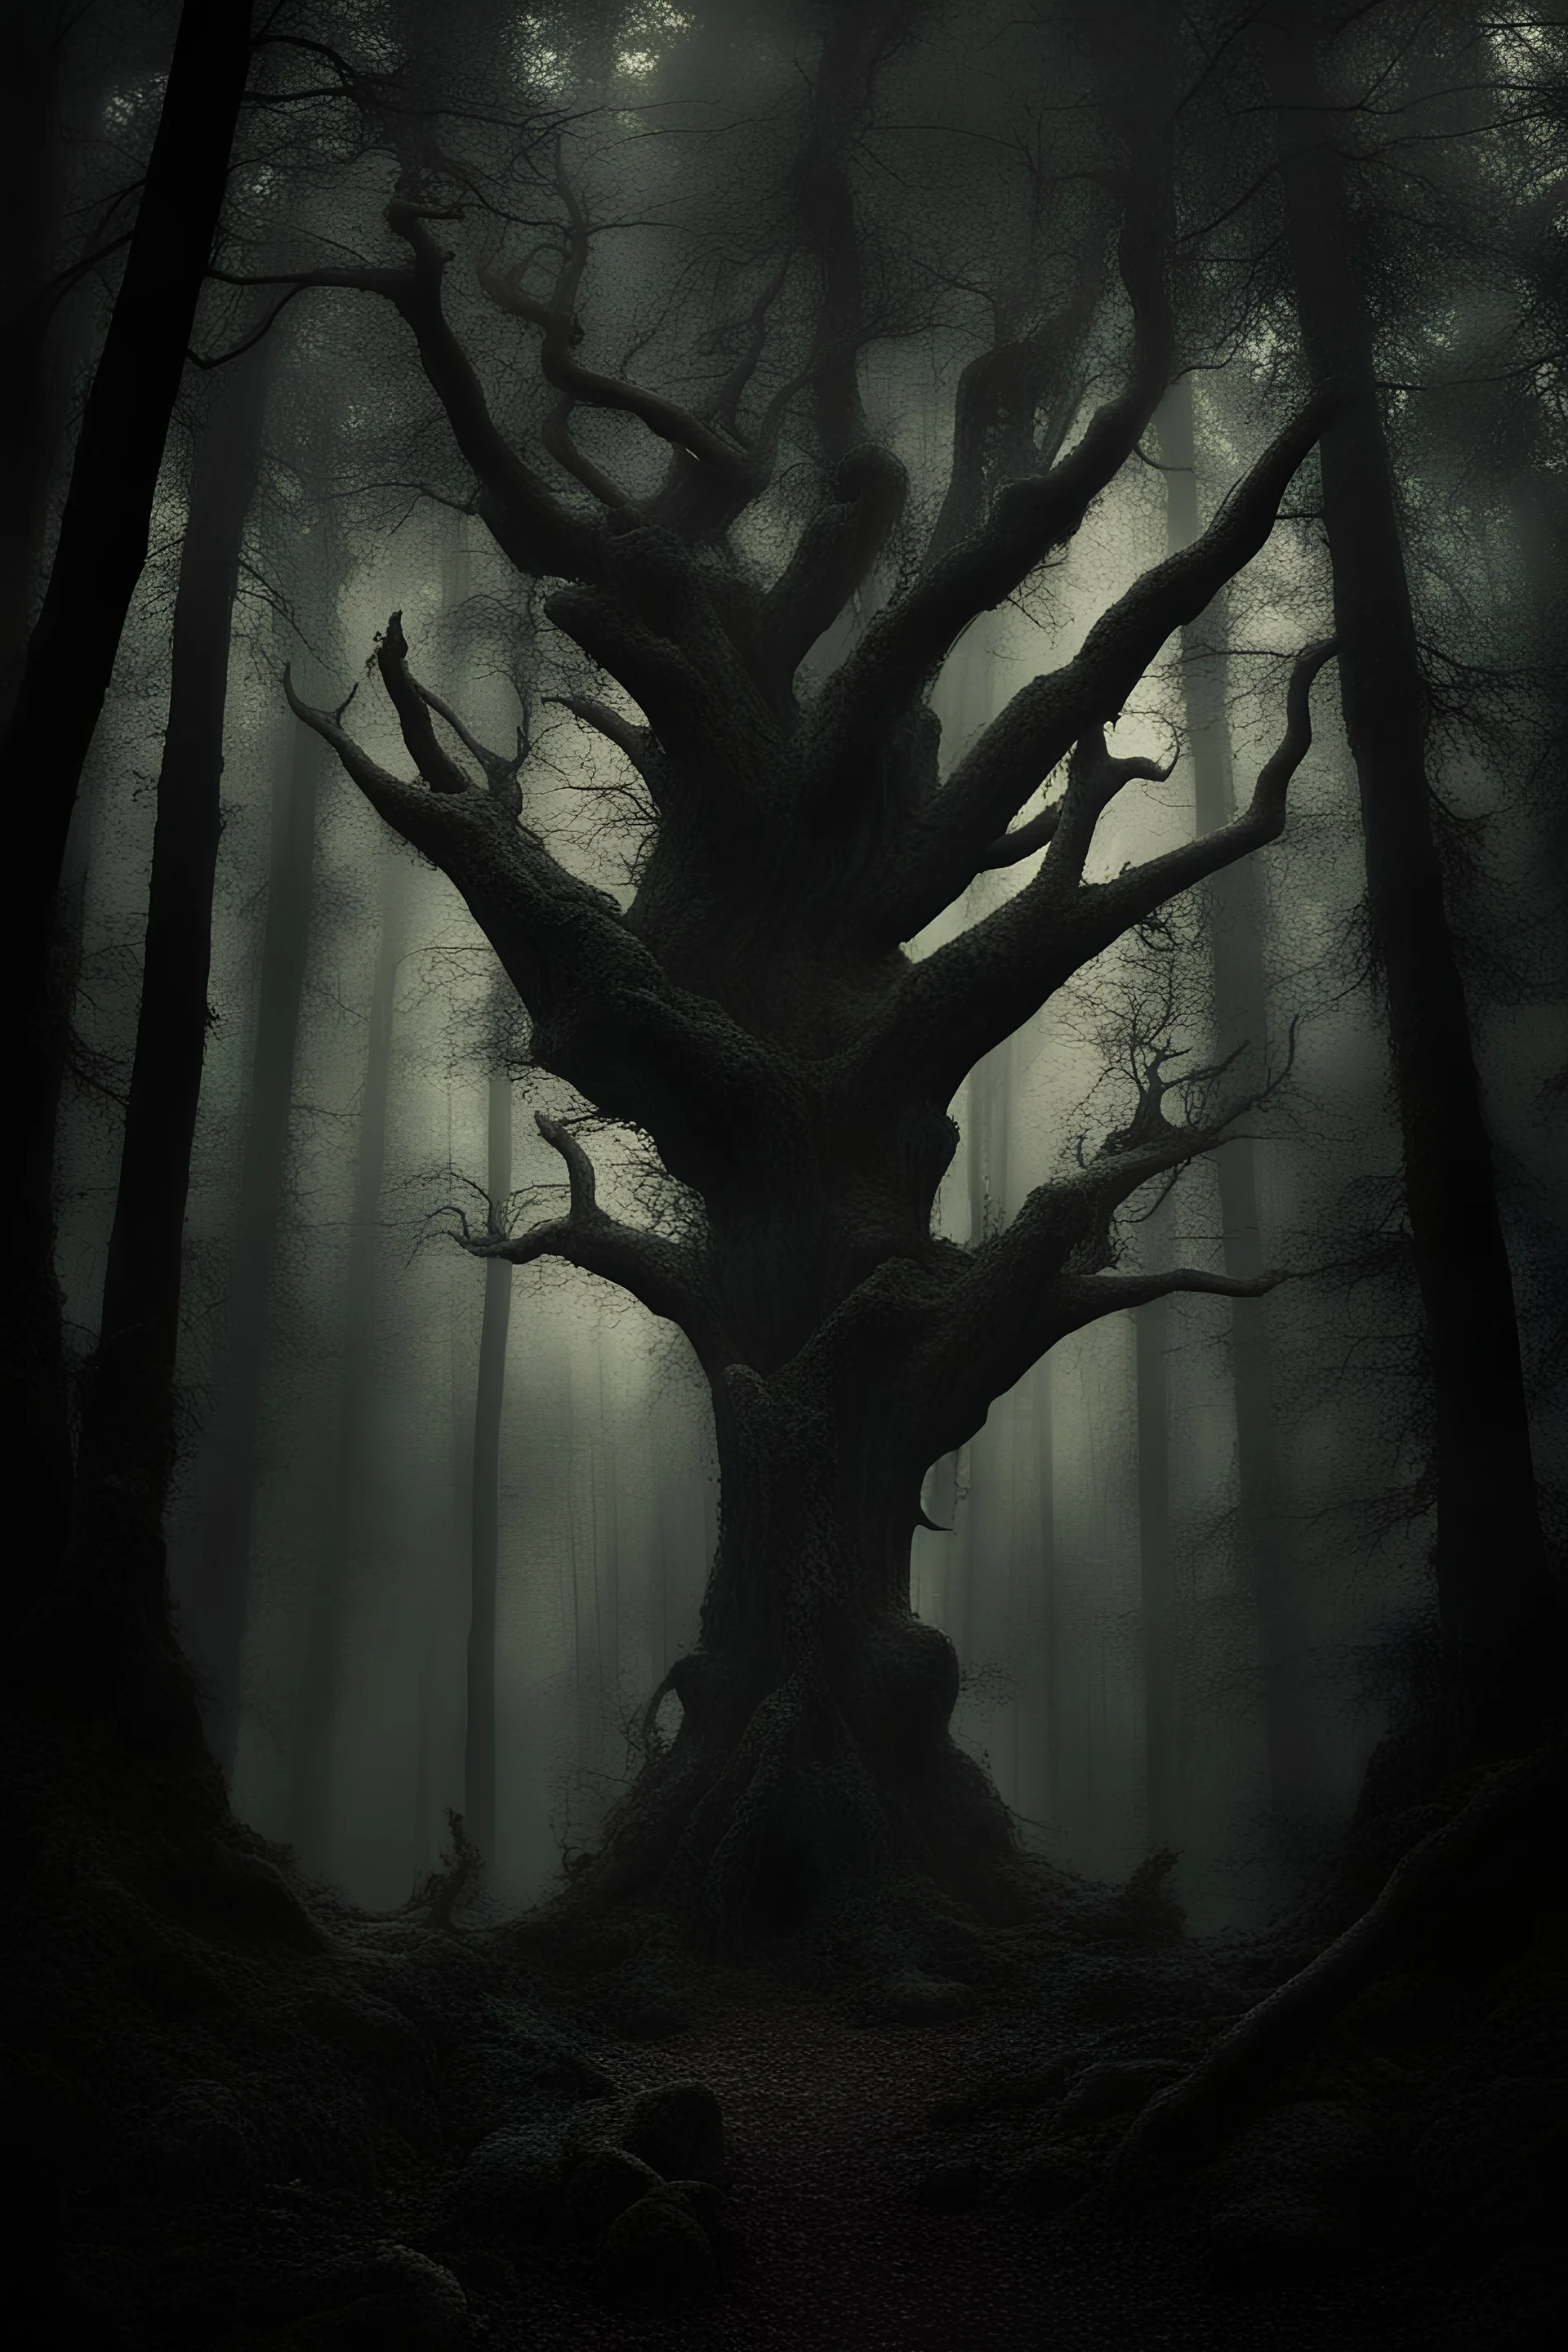 dark fantasy forest